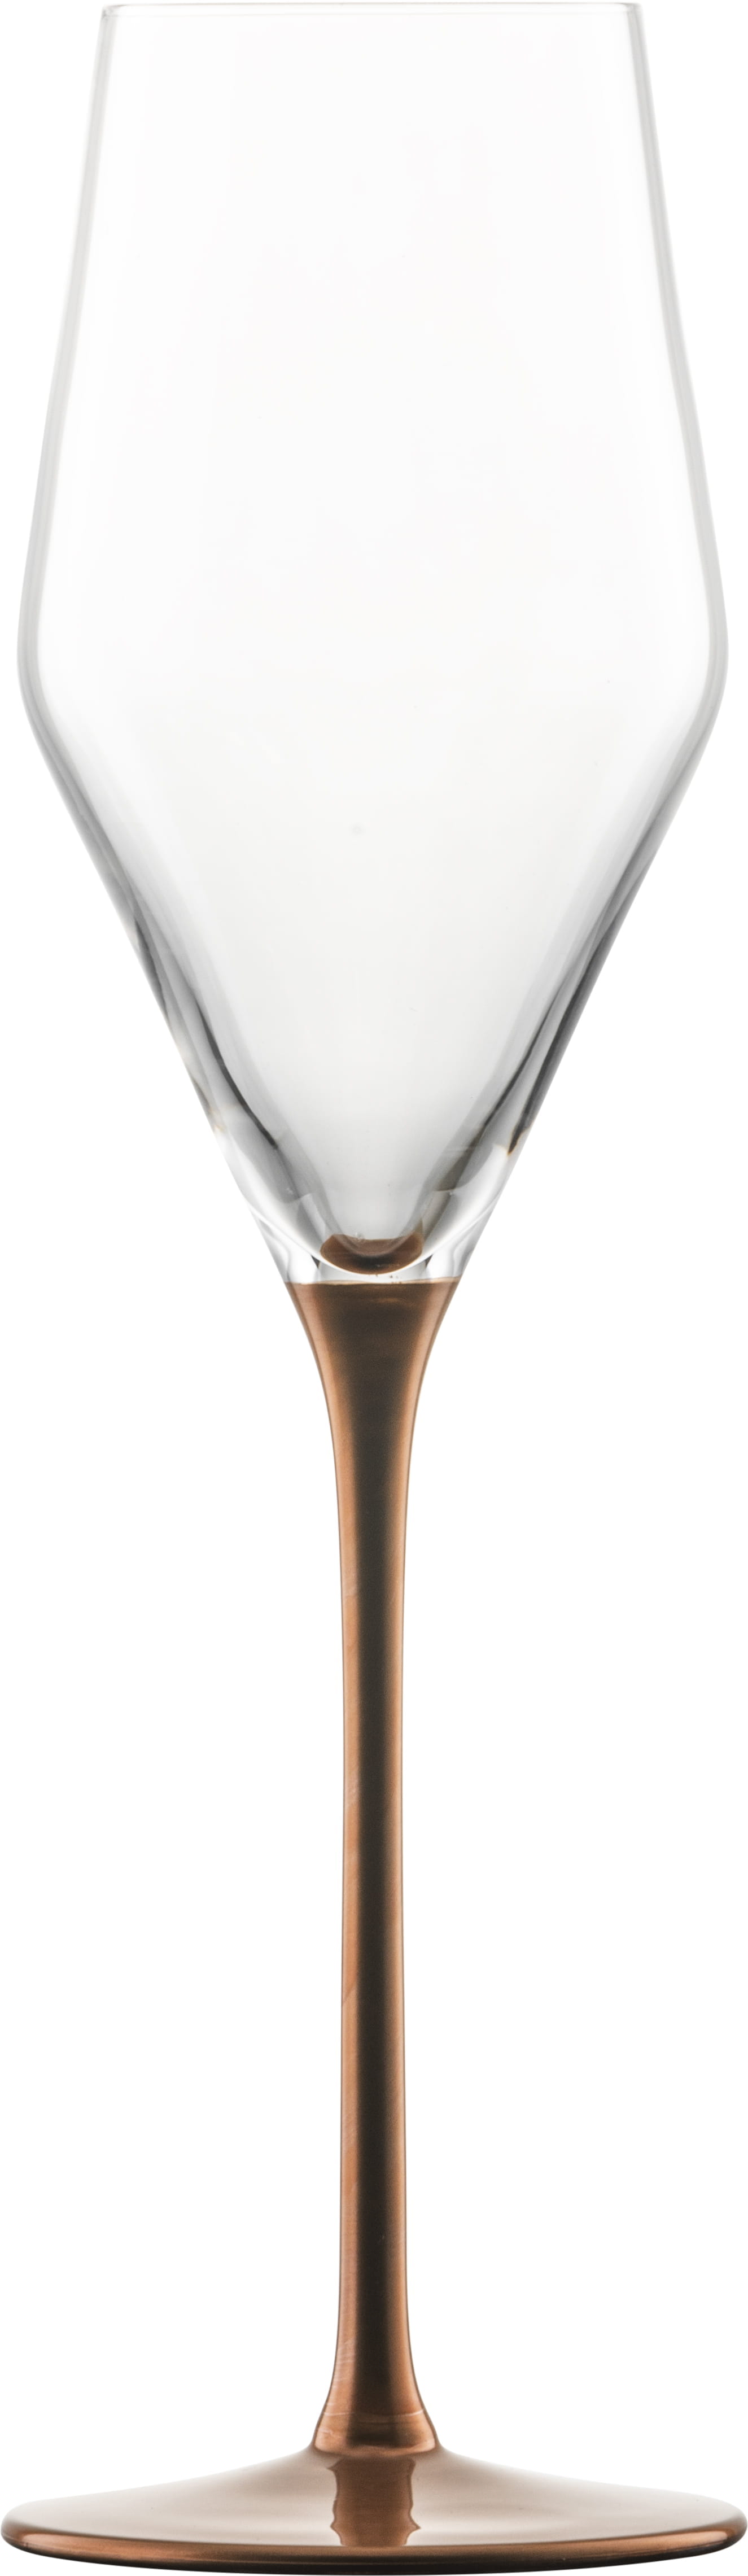 Eisch Glas Kaya Copper Champagnerglas 518/7 mit Moussierpunkt